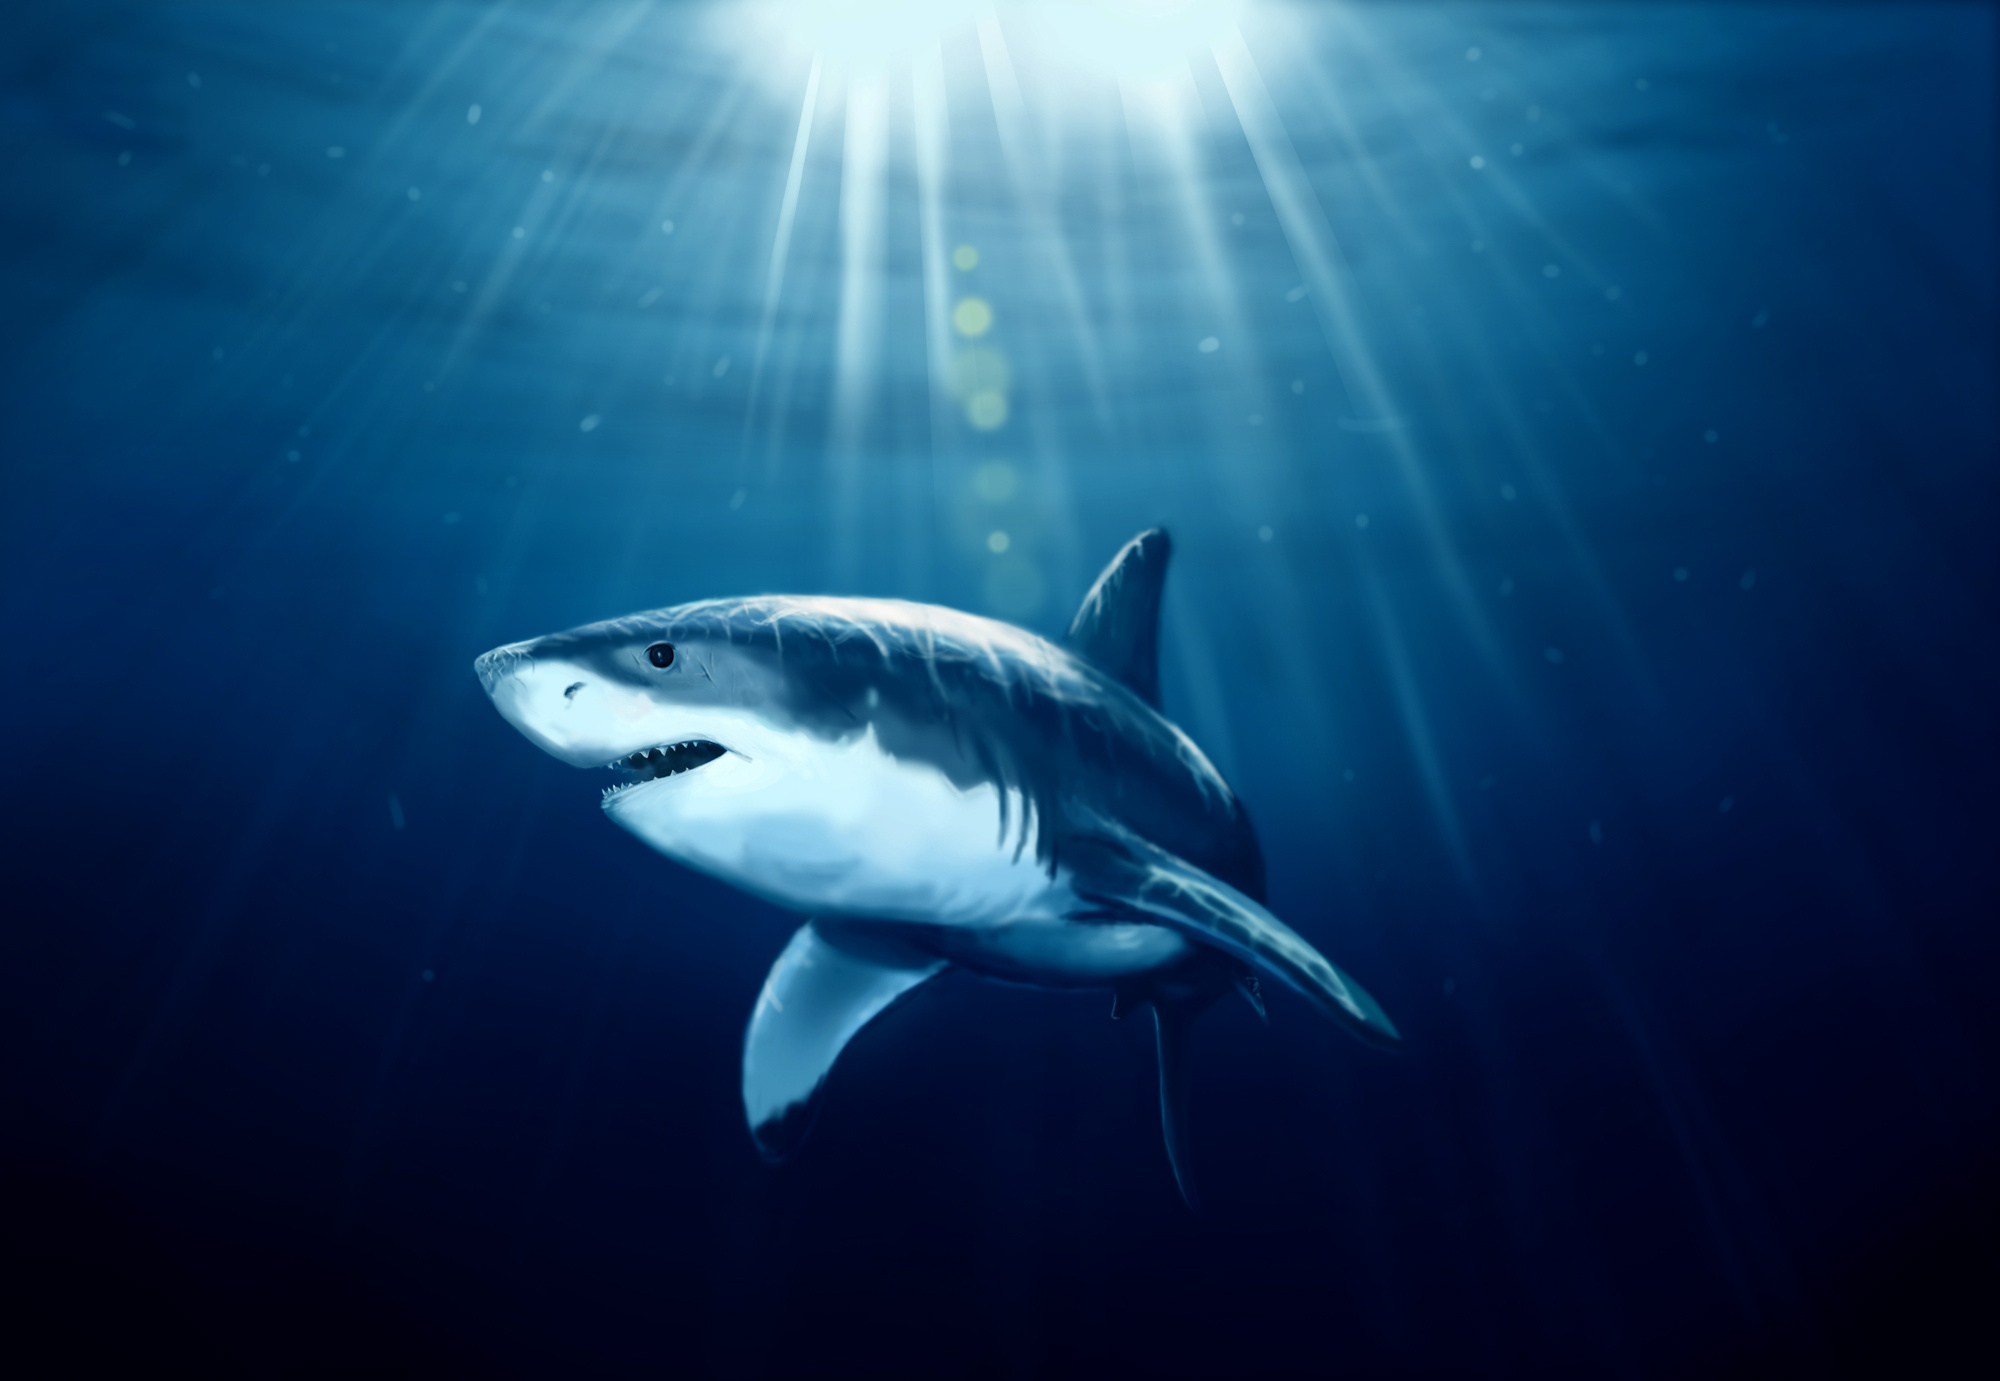 Descarga gratuita de fondo de pantalla para móvil de Tiburones, Tiburón, 3D, Cgi, Animales.